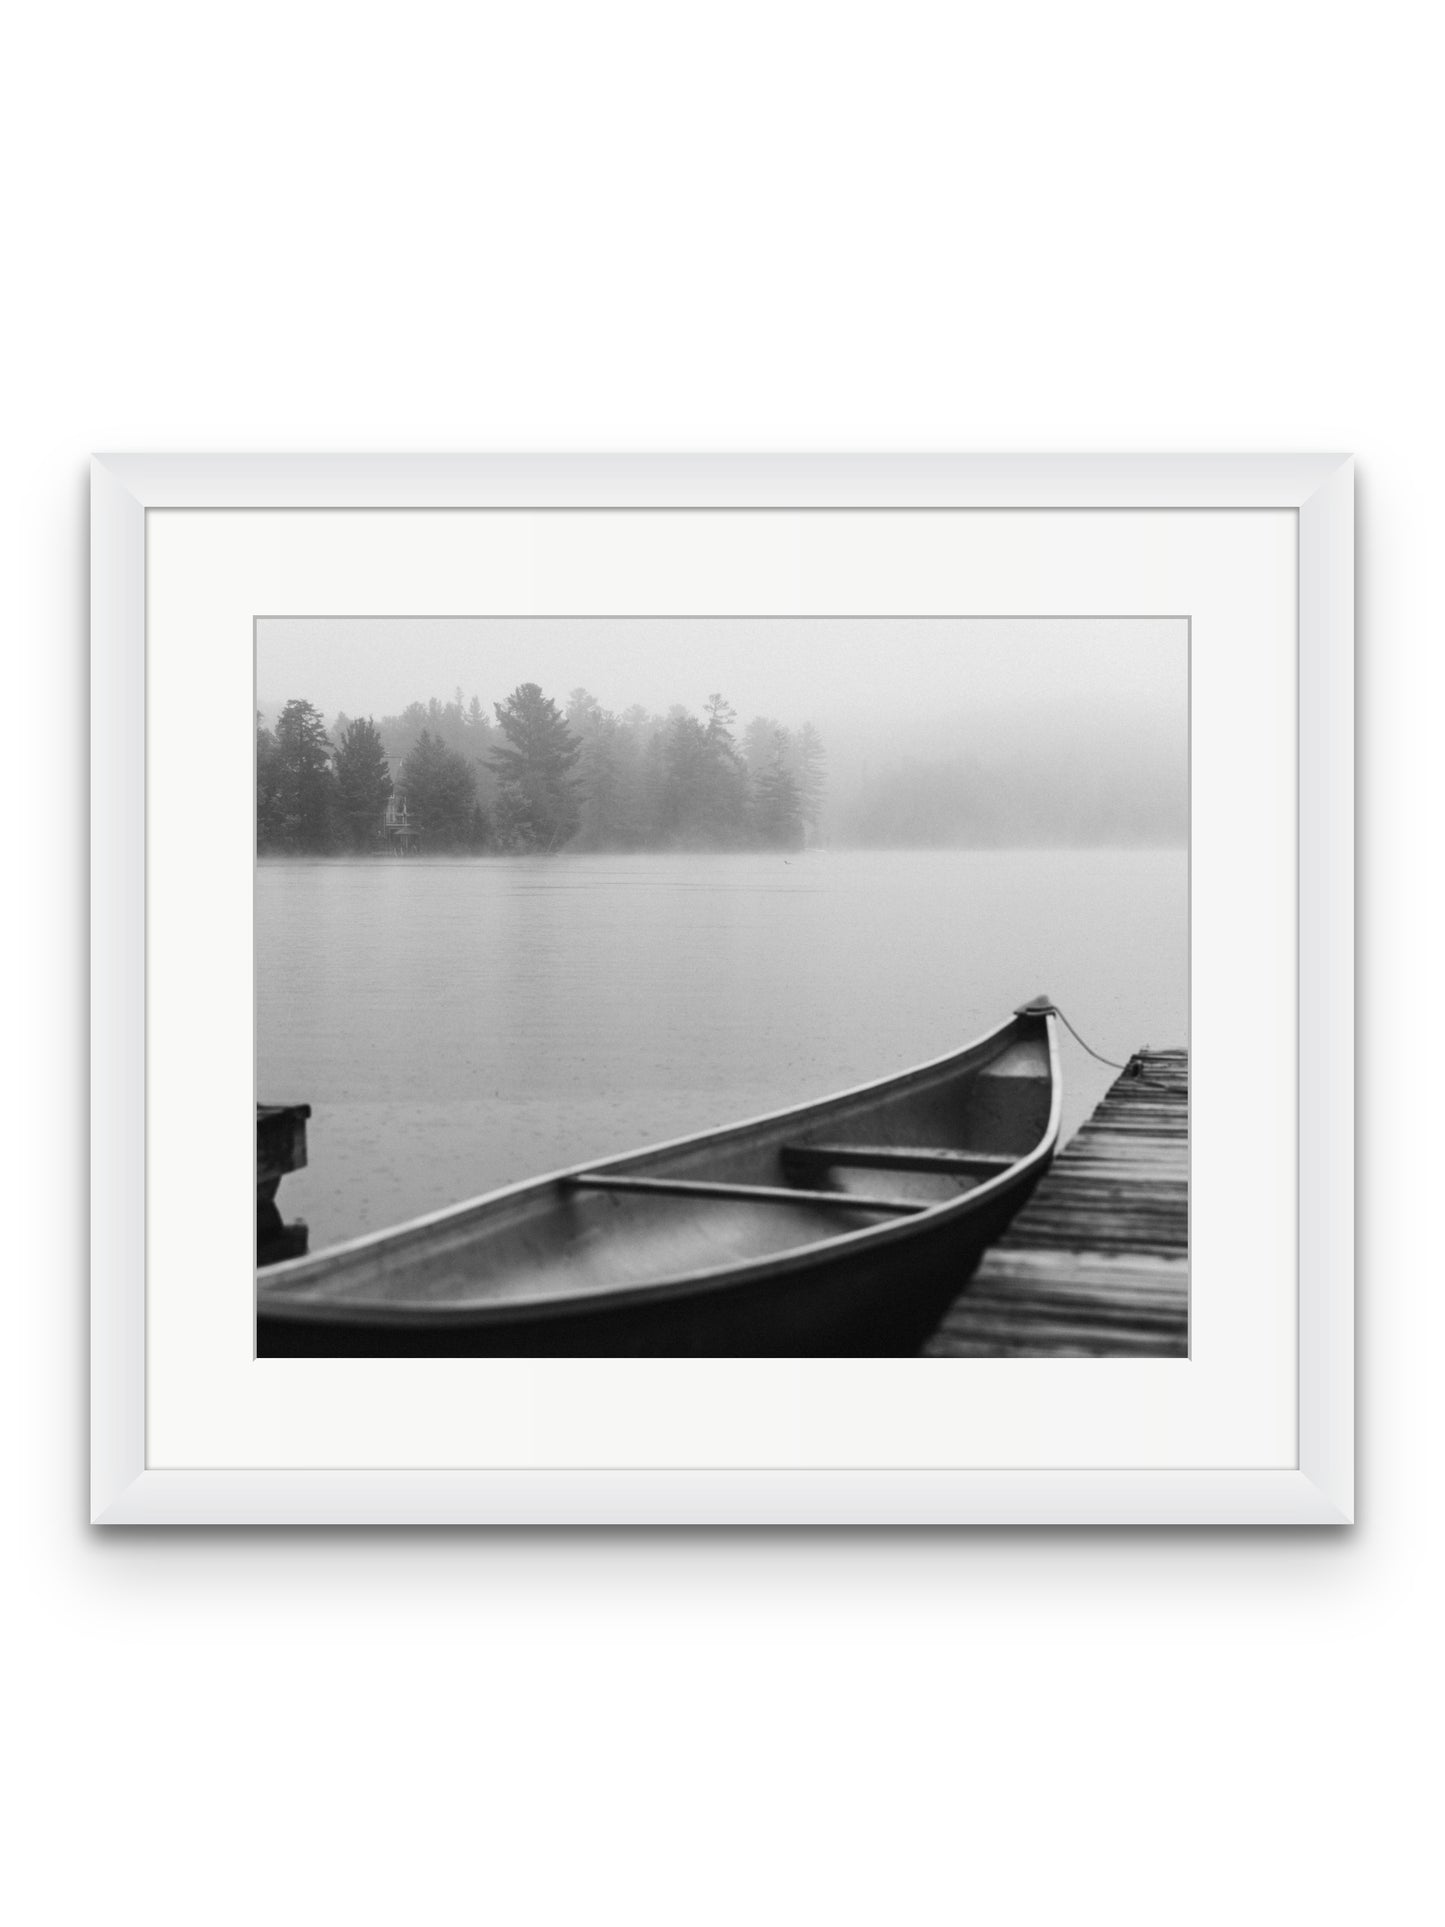 Foggy Canoe